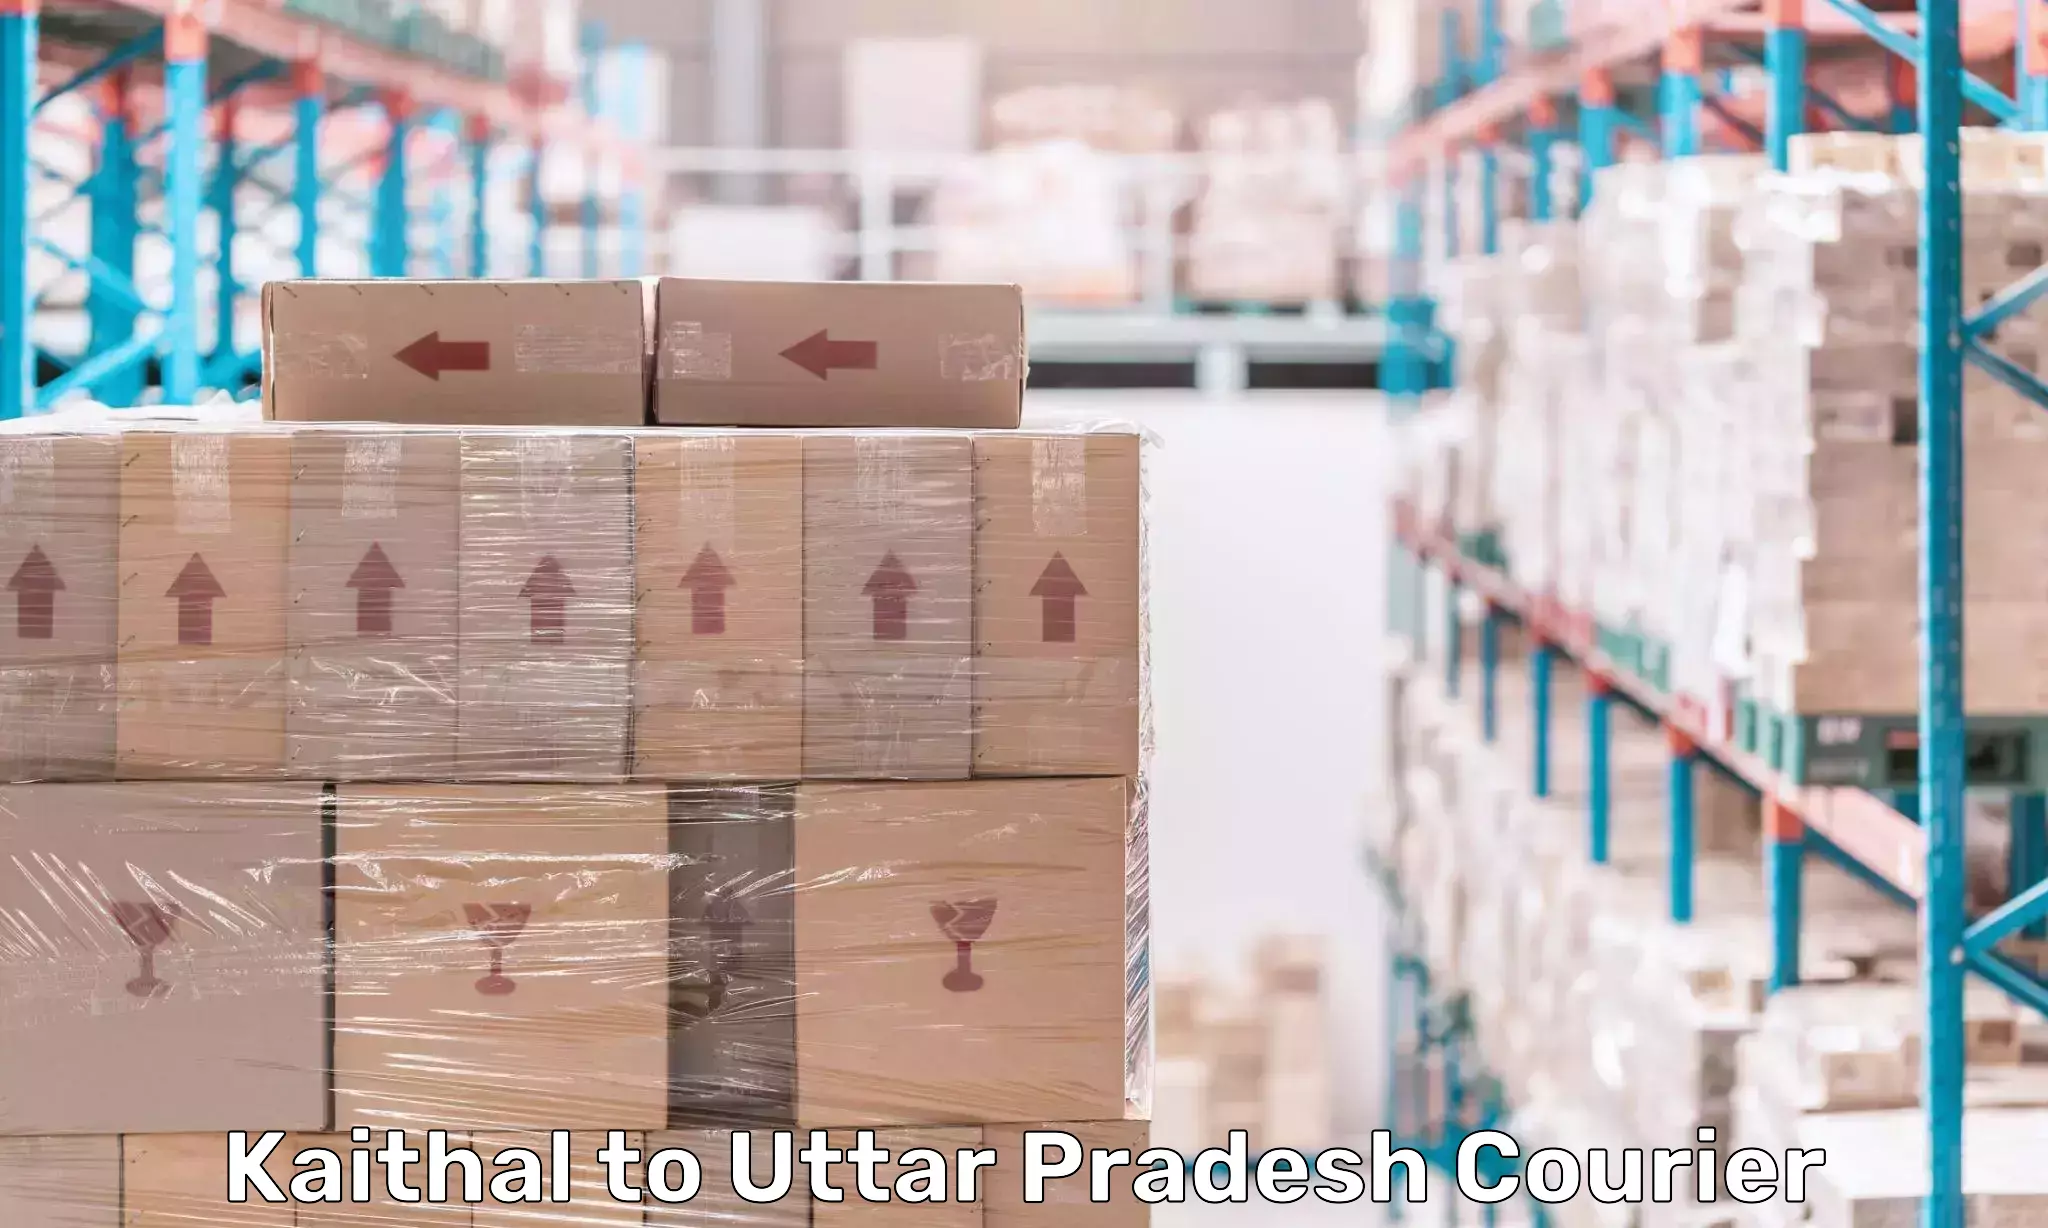 Global shipping networks Kaithal to Uttar Pradesh